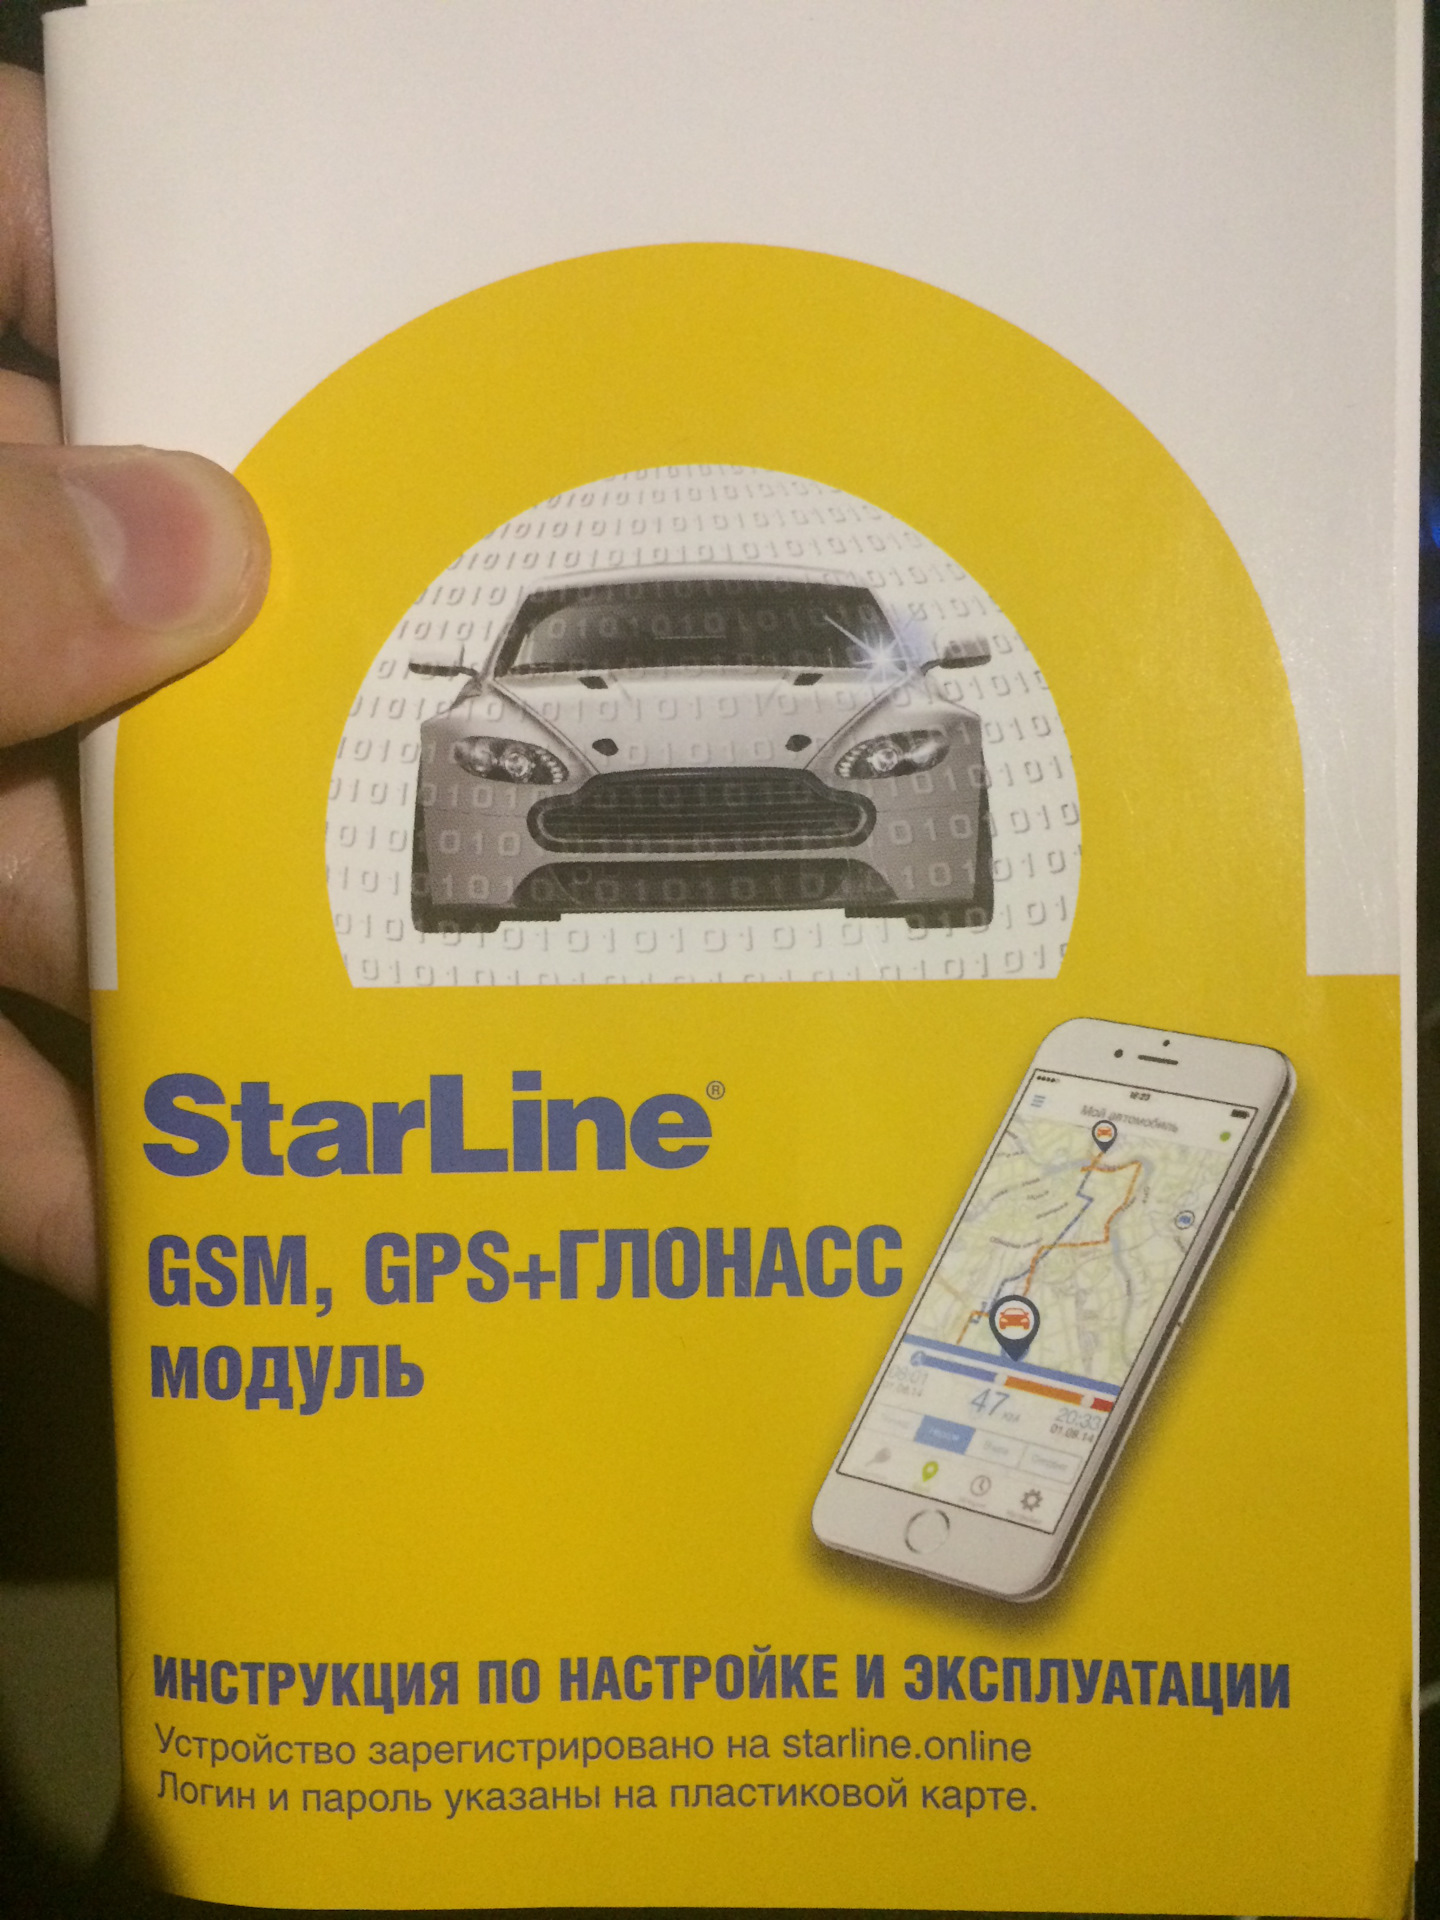 Starline gsm отзывы. Авто GSM модуль ГЛОНАСС. Модуль Star line мастер 6 GPS+ГЛОНАСС STARLINE 4001715. Е93старлайн отзывы. Зарегистрировать старлайн.